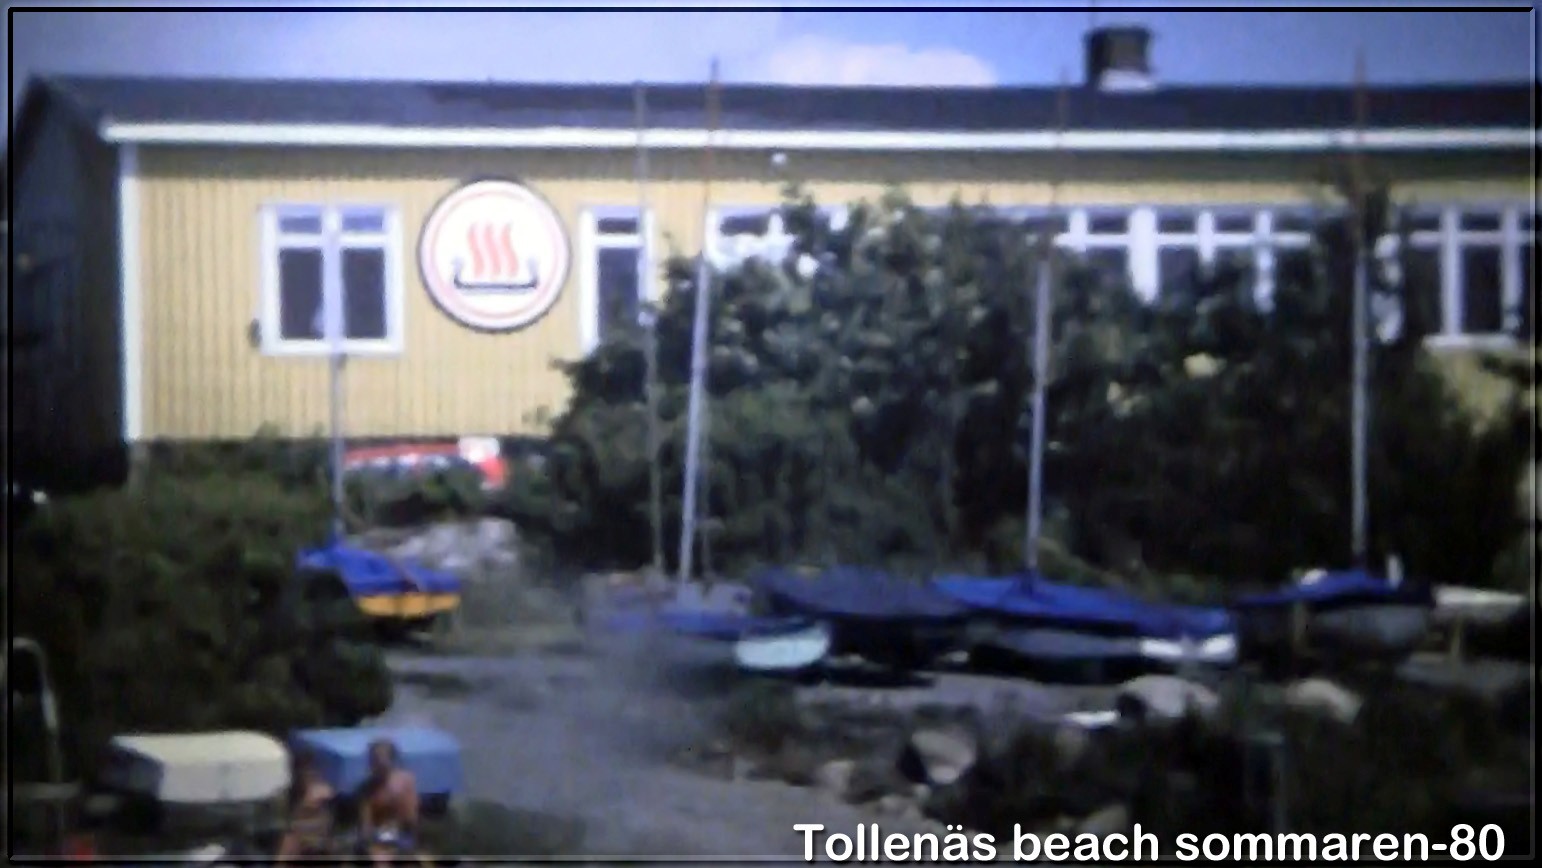 004-Tollenas-i-SSS-regi-1976-82